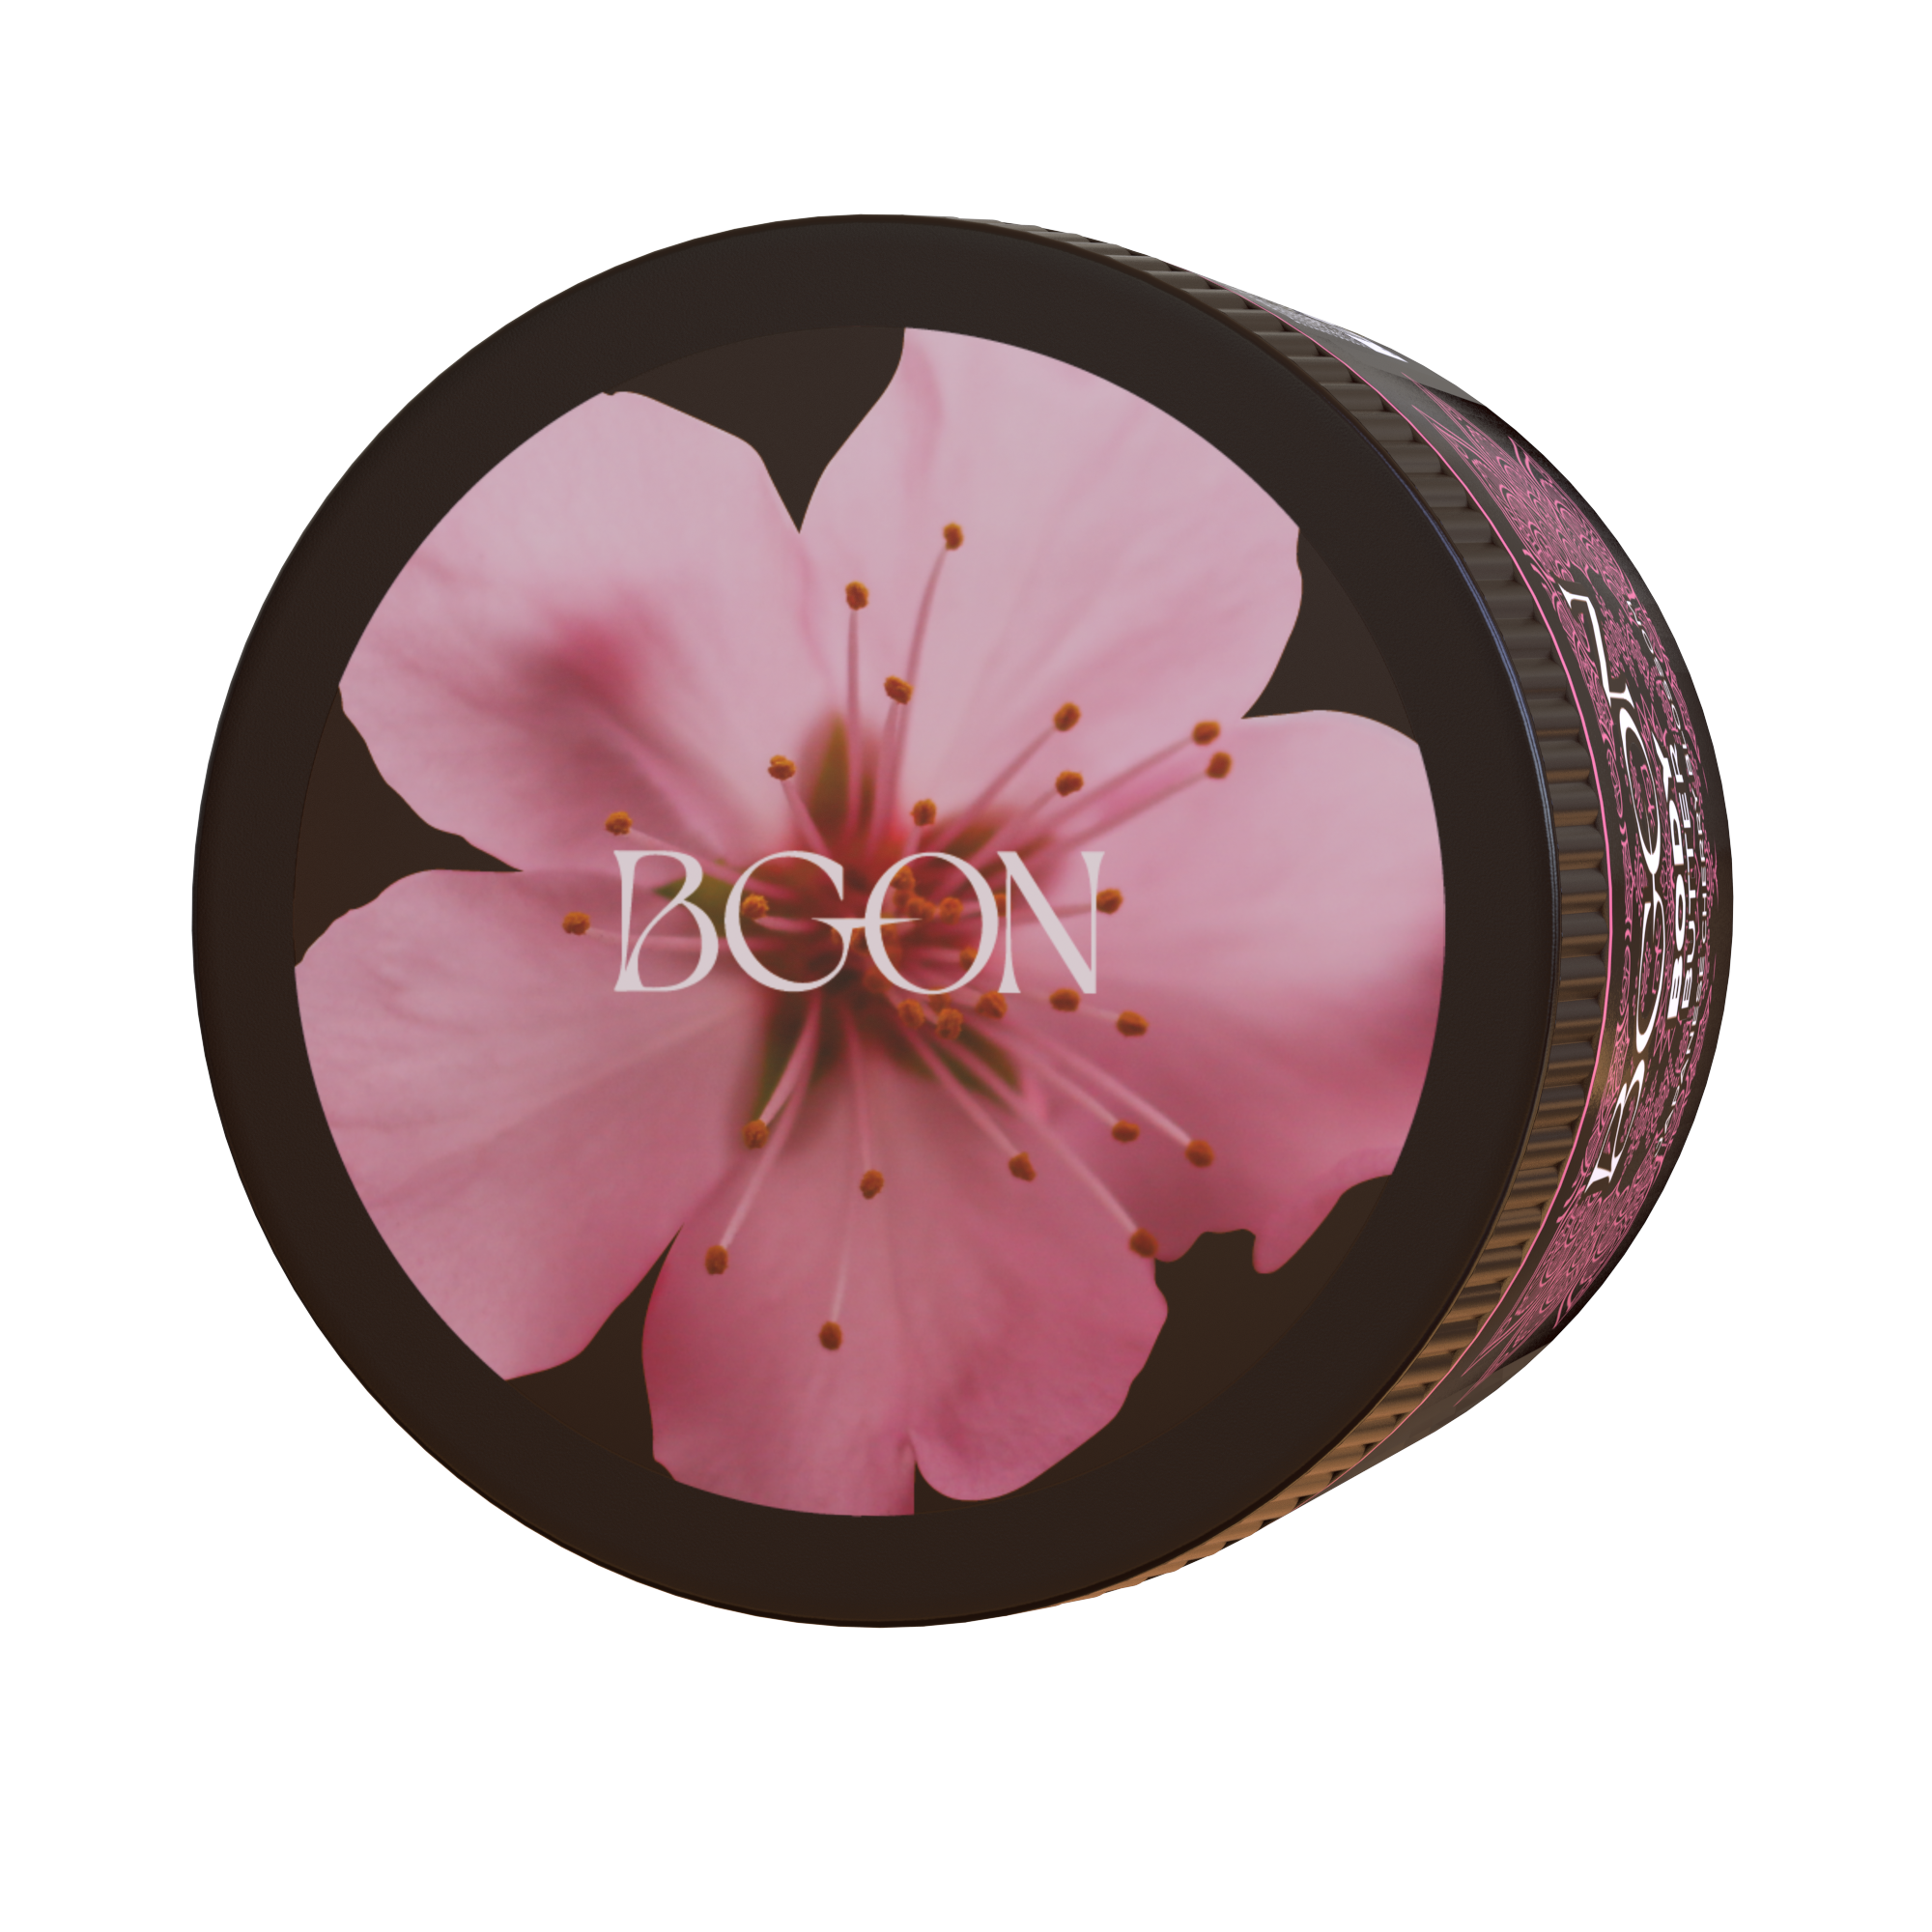 BGON Body Butter - Japon Kiraz Çiçeği - 100ml